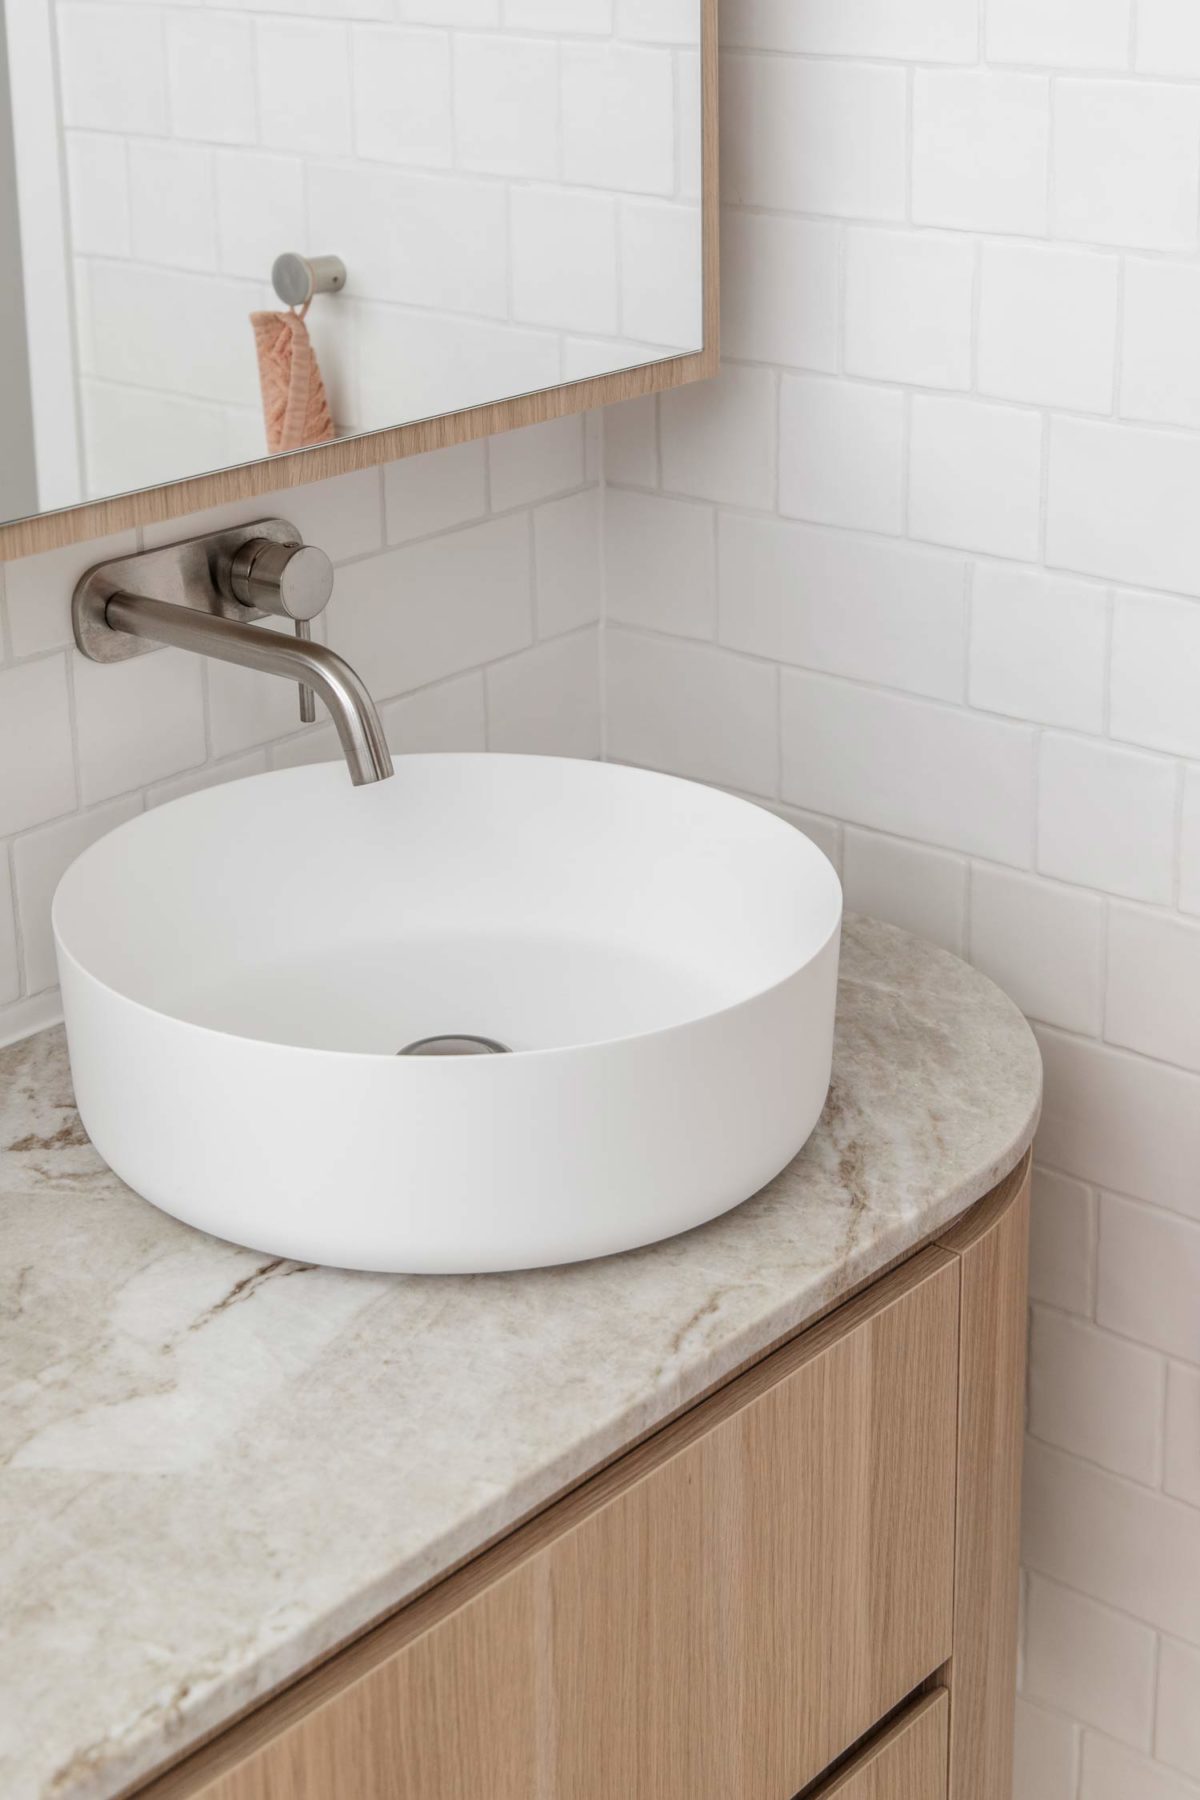 Quy luật thống nhất thông qua các lớp hoàn thiện thiết kế vòi nước giống nhau trong nhà bếp và phòng tắm.